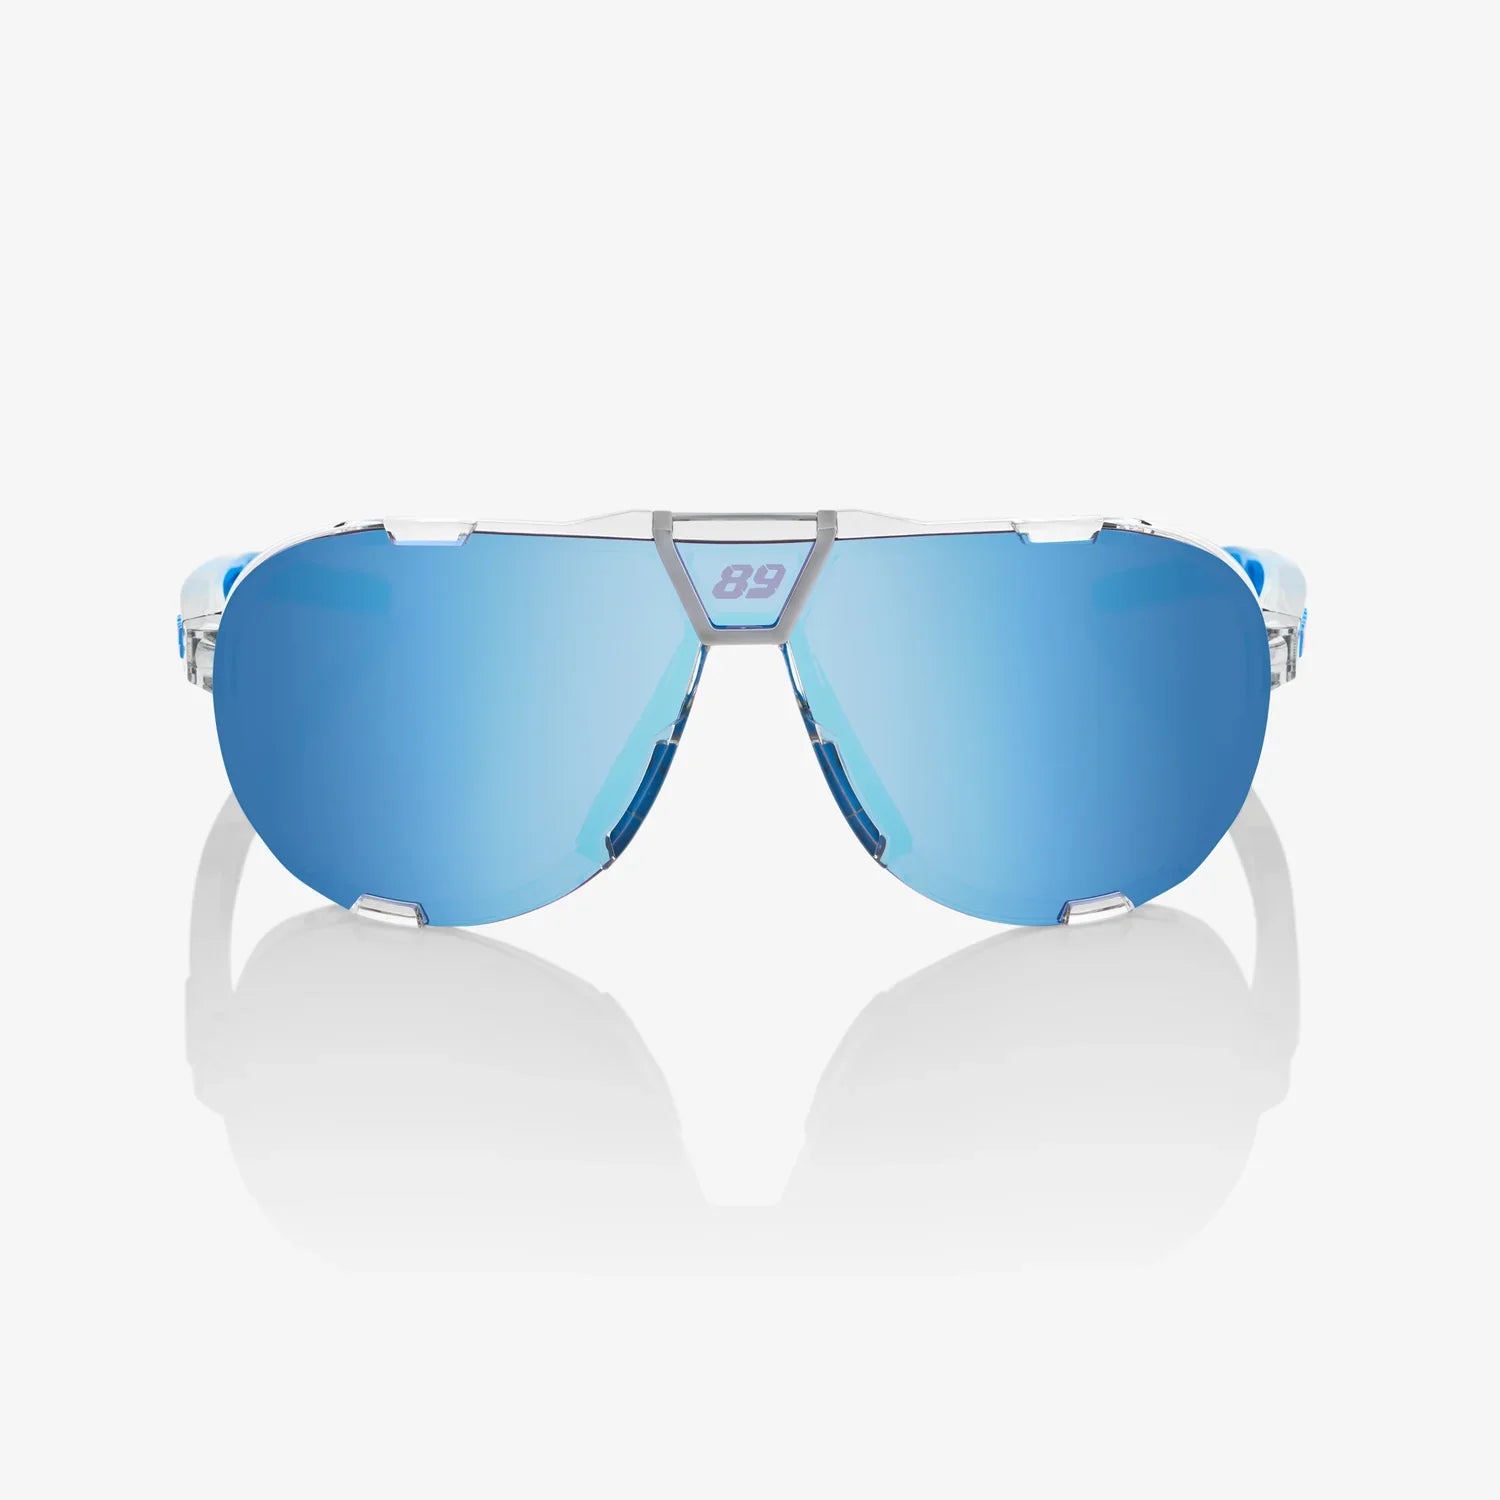 Gafas 100% Westcraft Jorge Martin SE Lente Hiper Azul Espejo